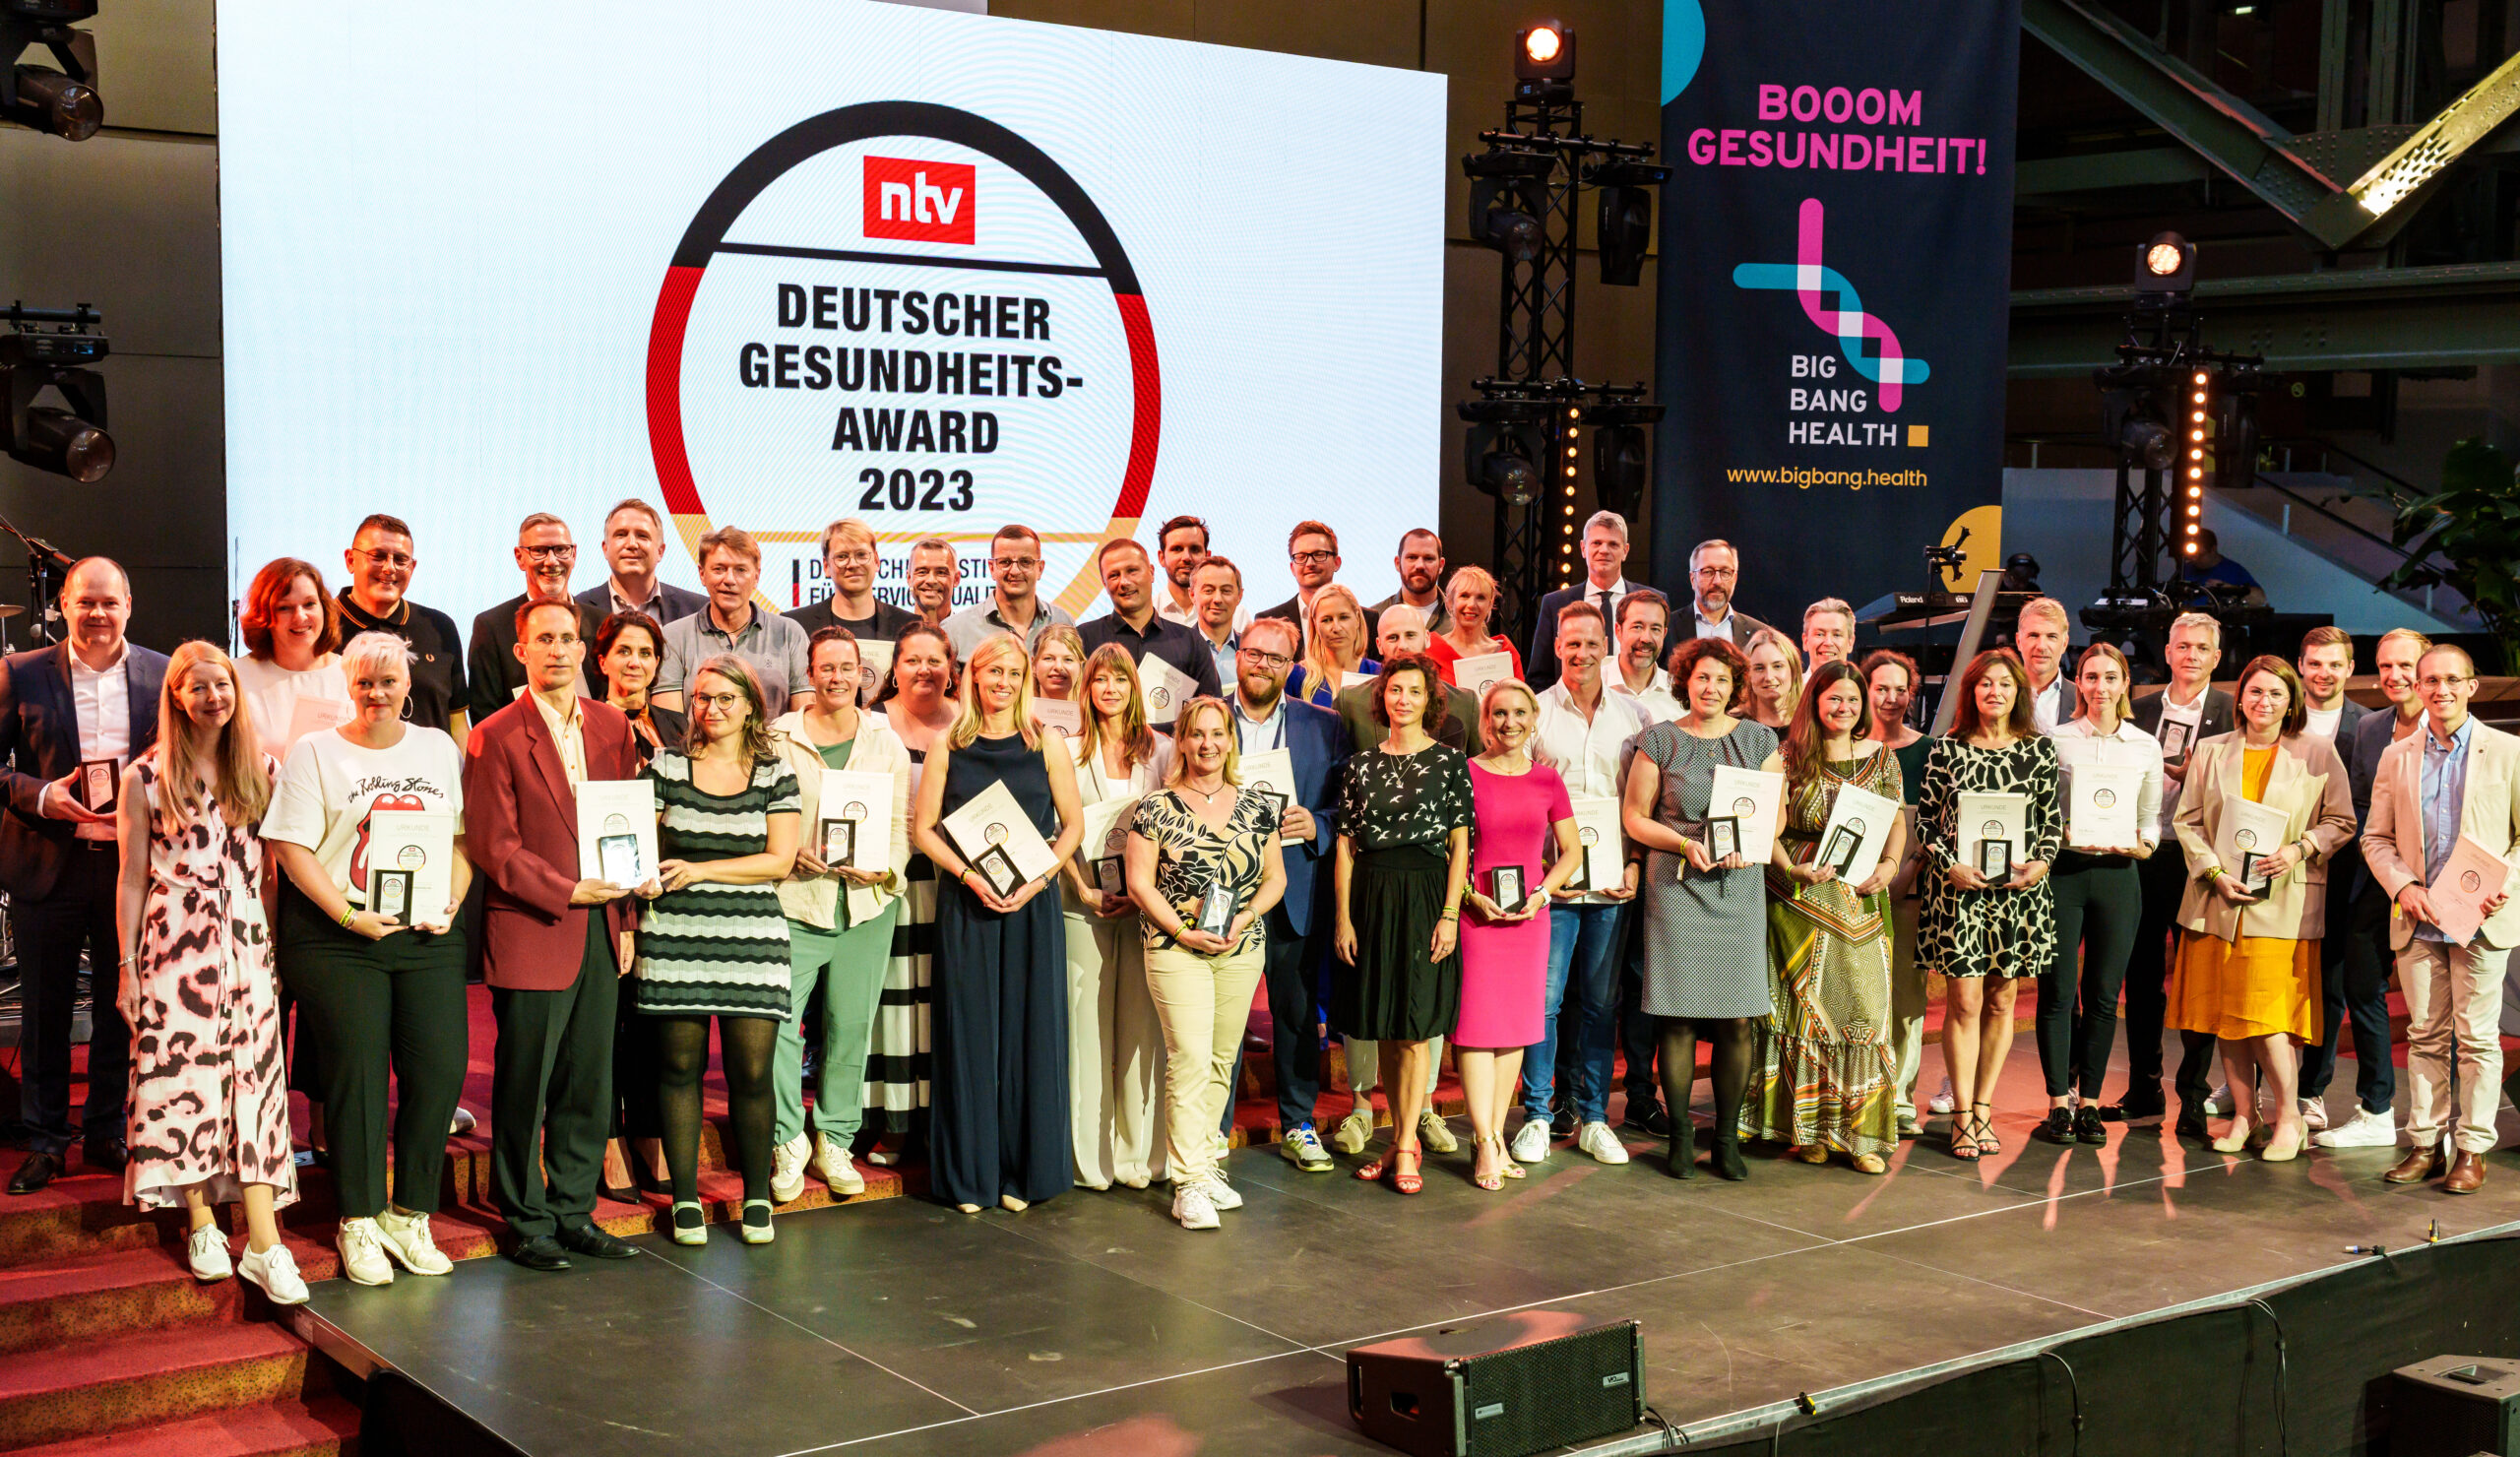 Deutscher Gesundheits-Award 2023